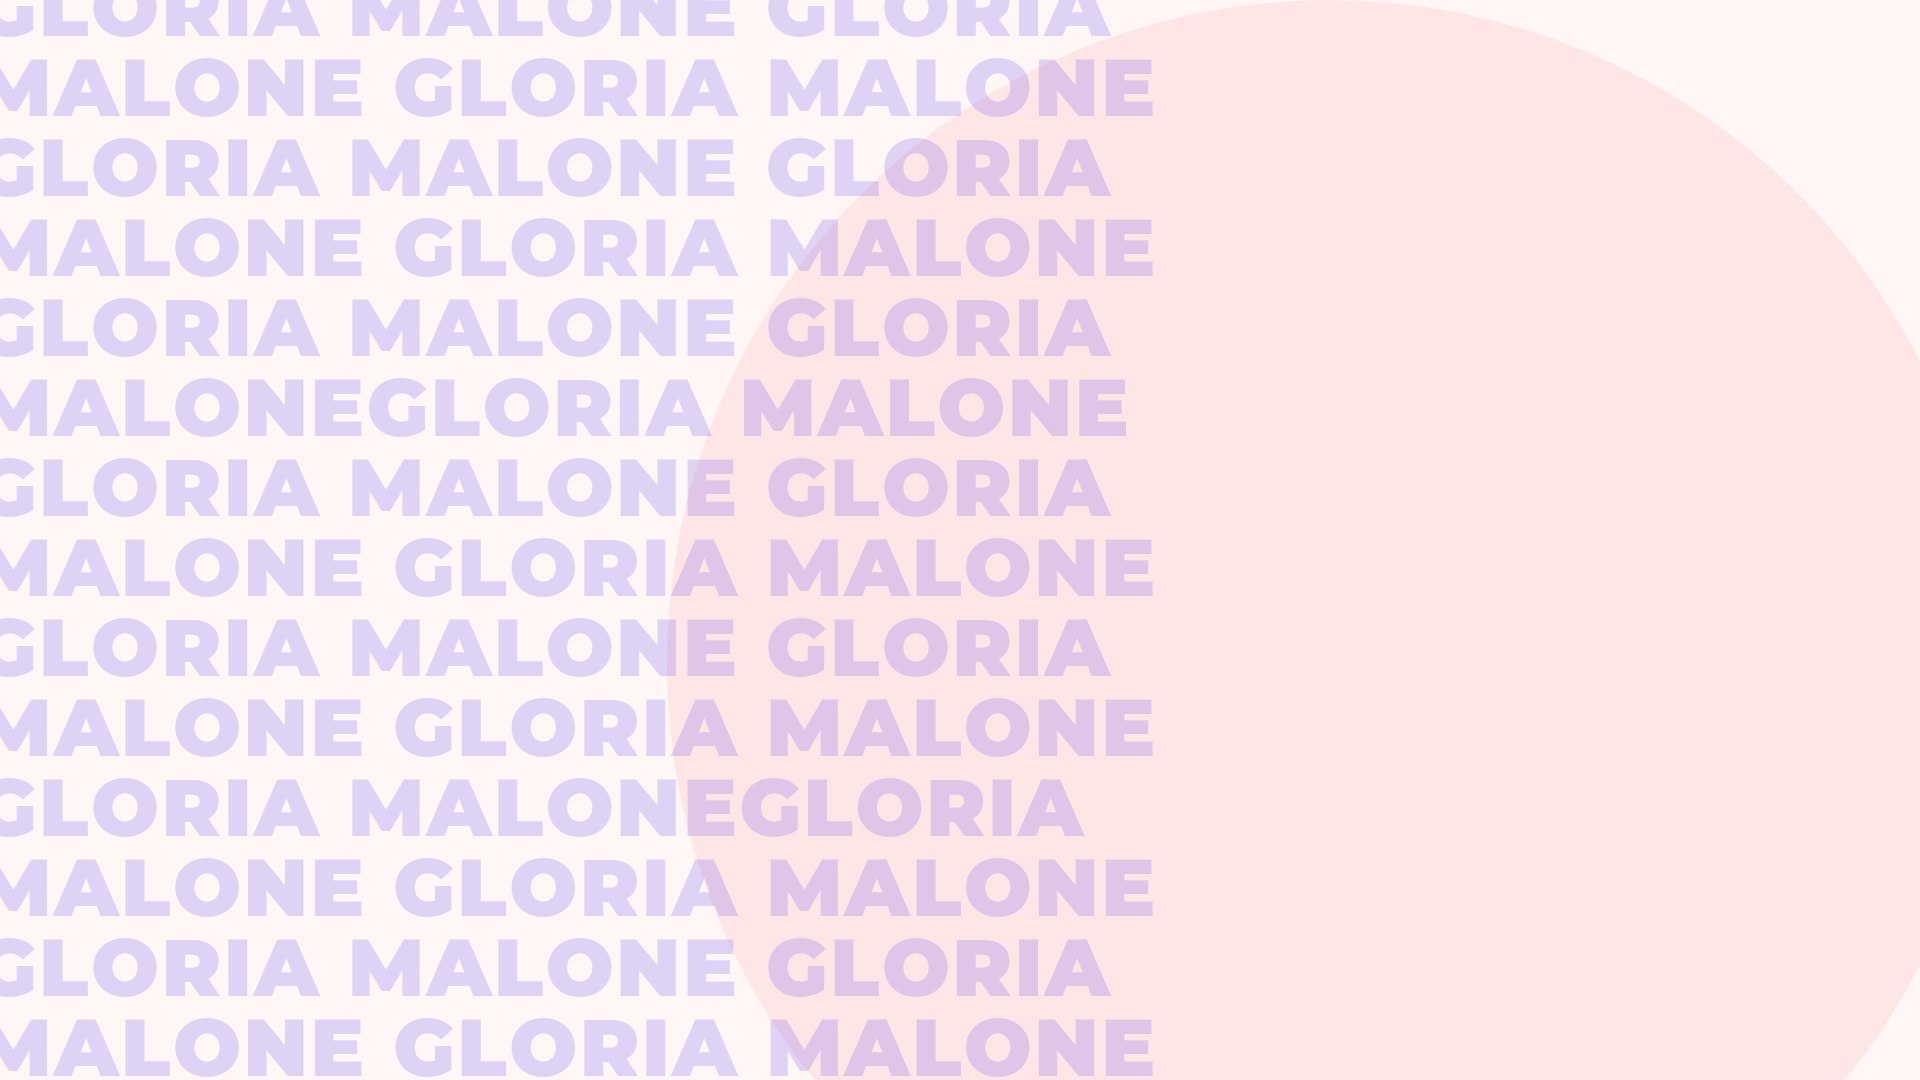 Gloria Malone 